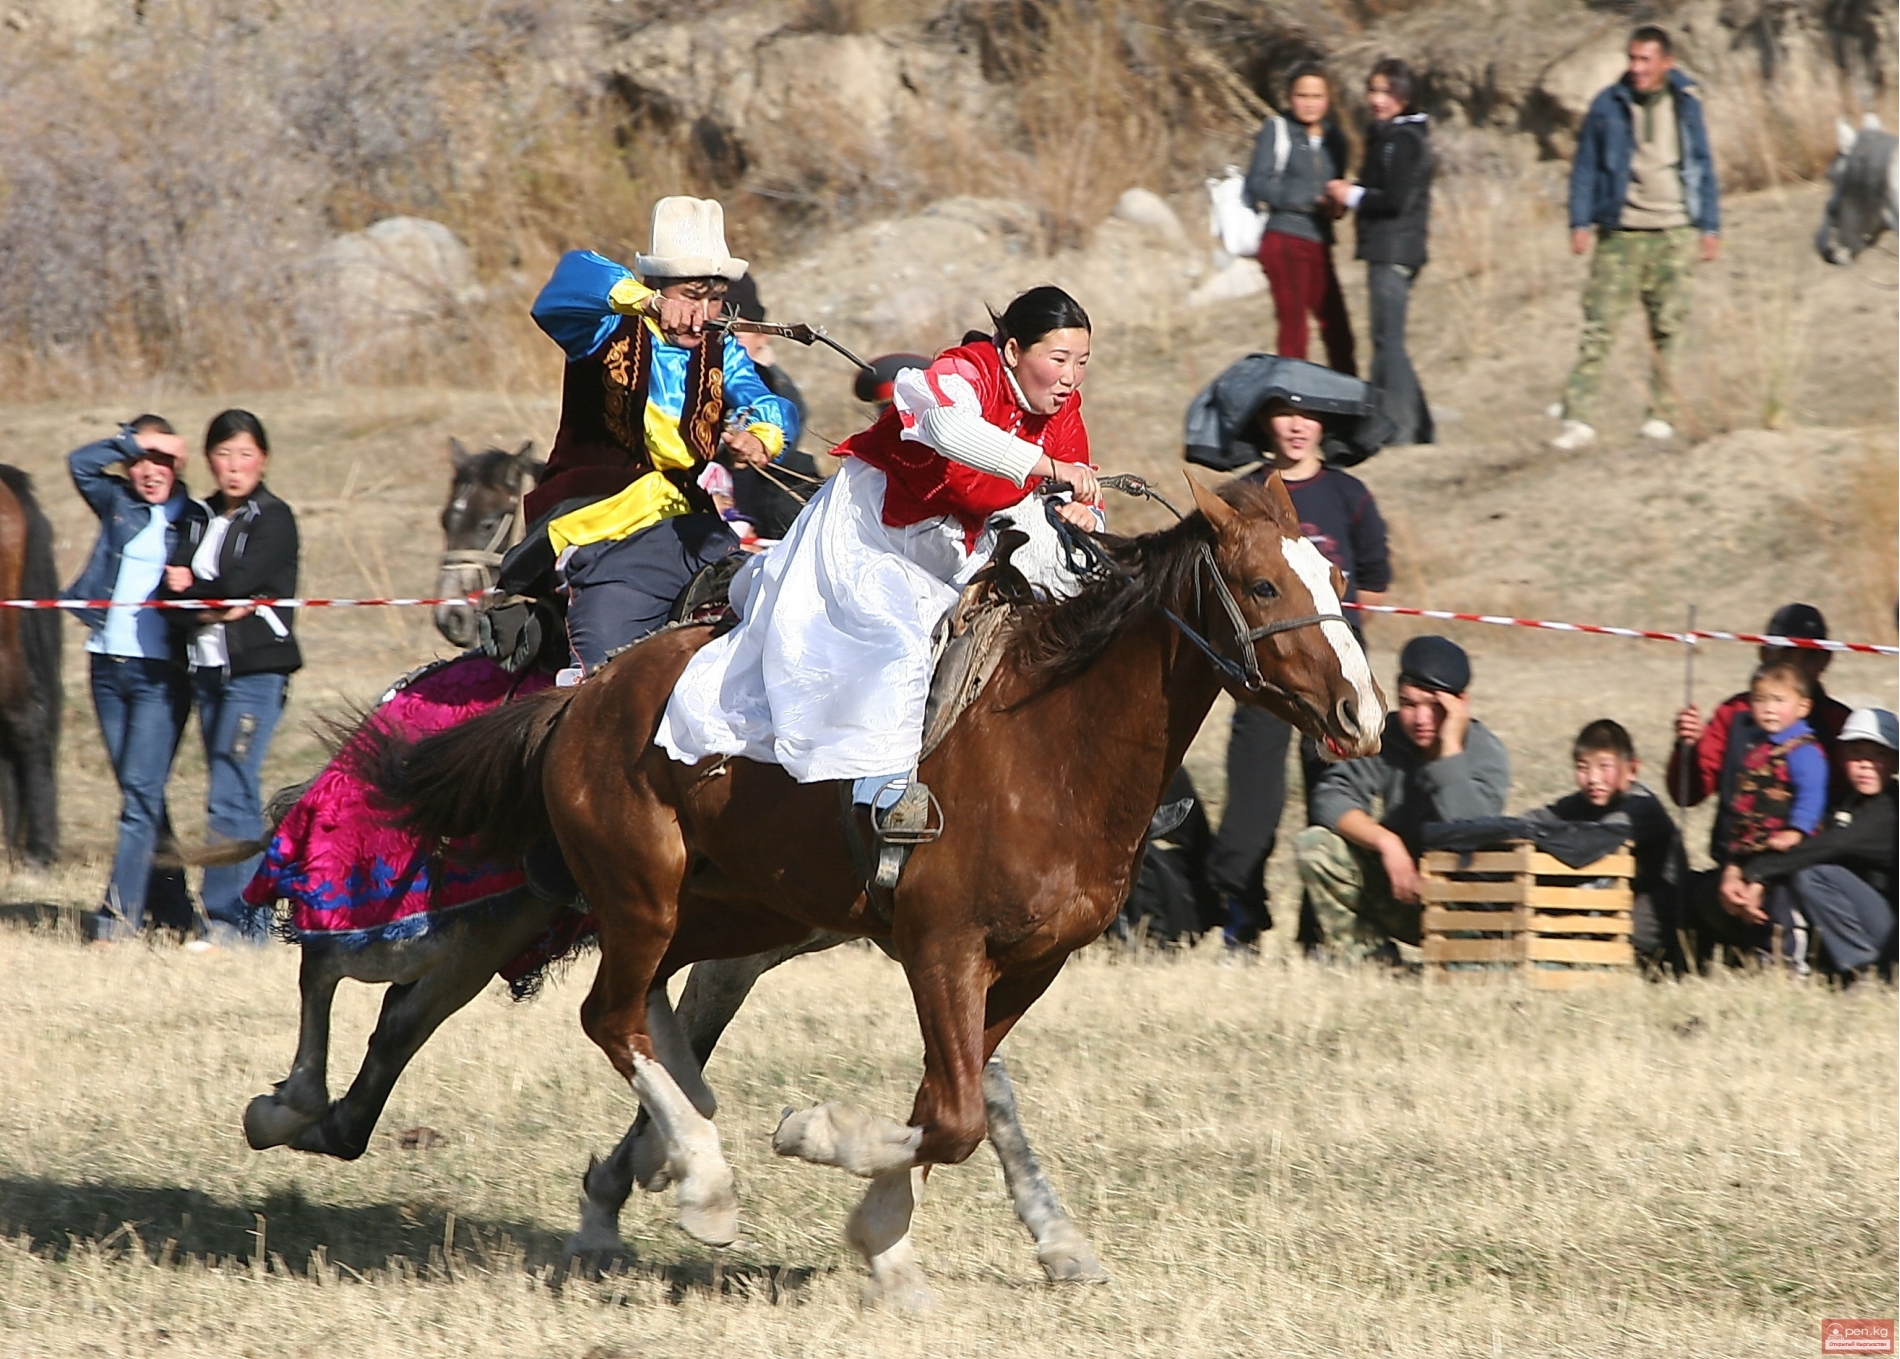 Игры казахского народа. Кыз куумай игра. Кыз куумай игры кочевников. Кыргызская Национальная игра кыз куумай. Традиции Нооруз Киргизия.